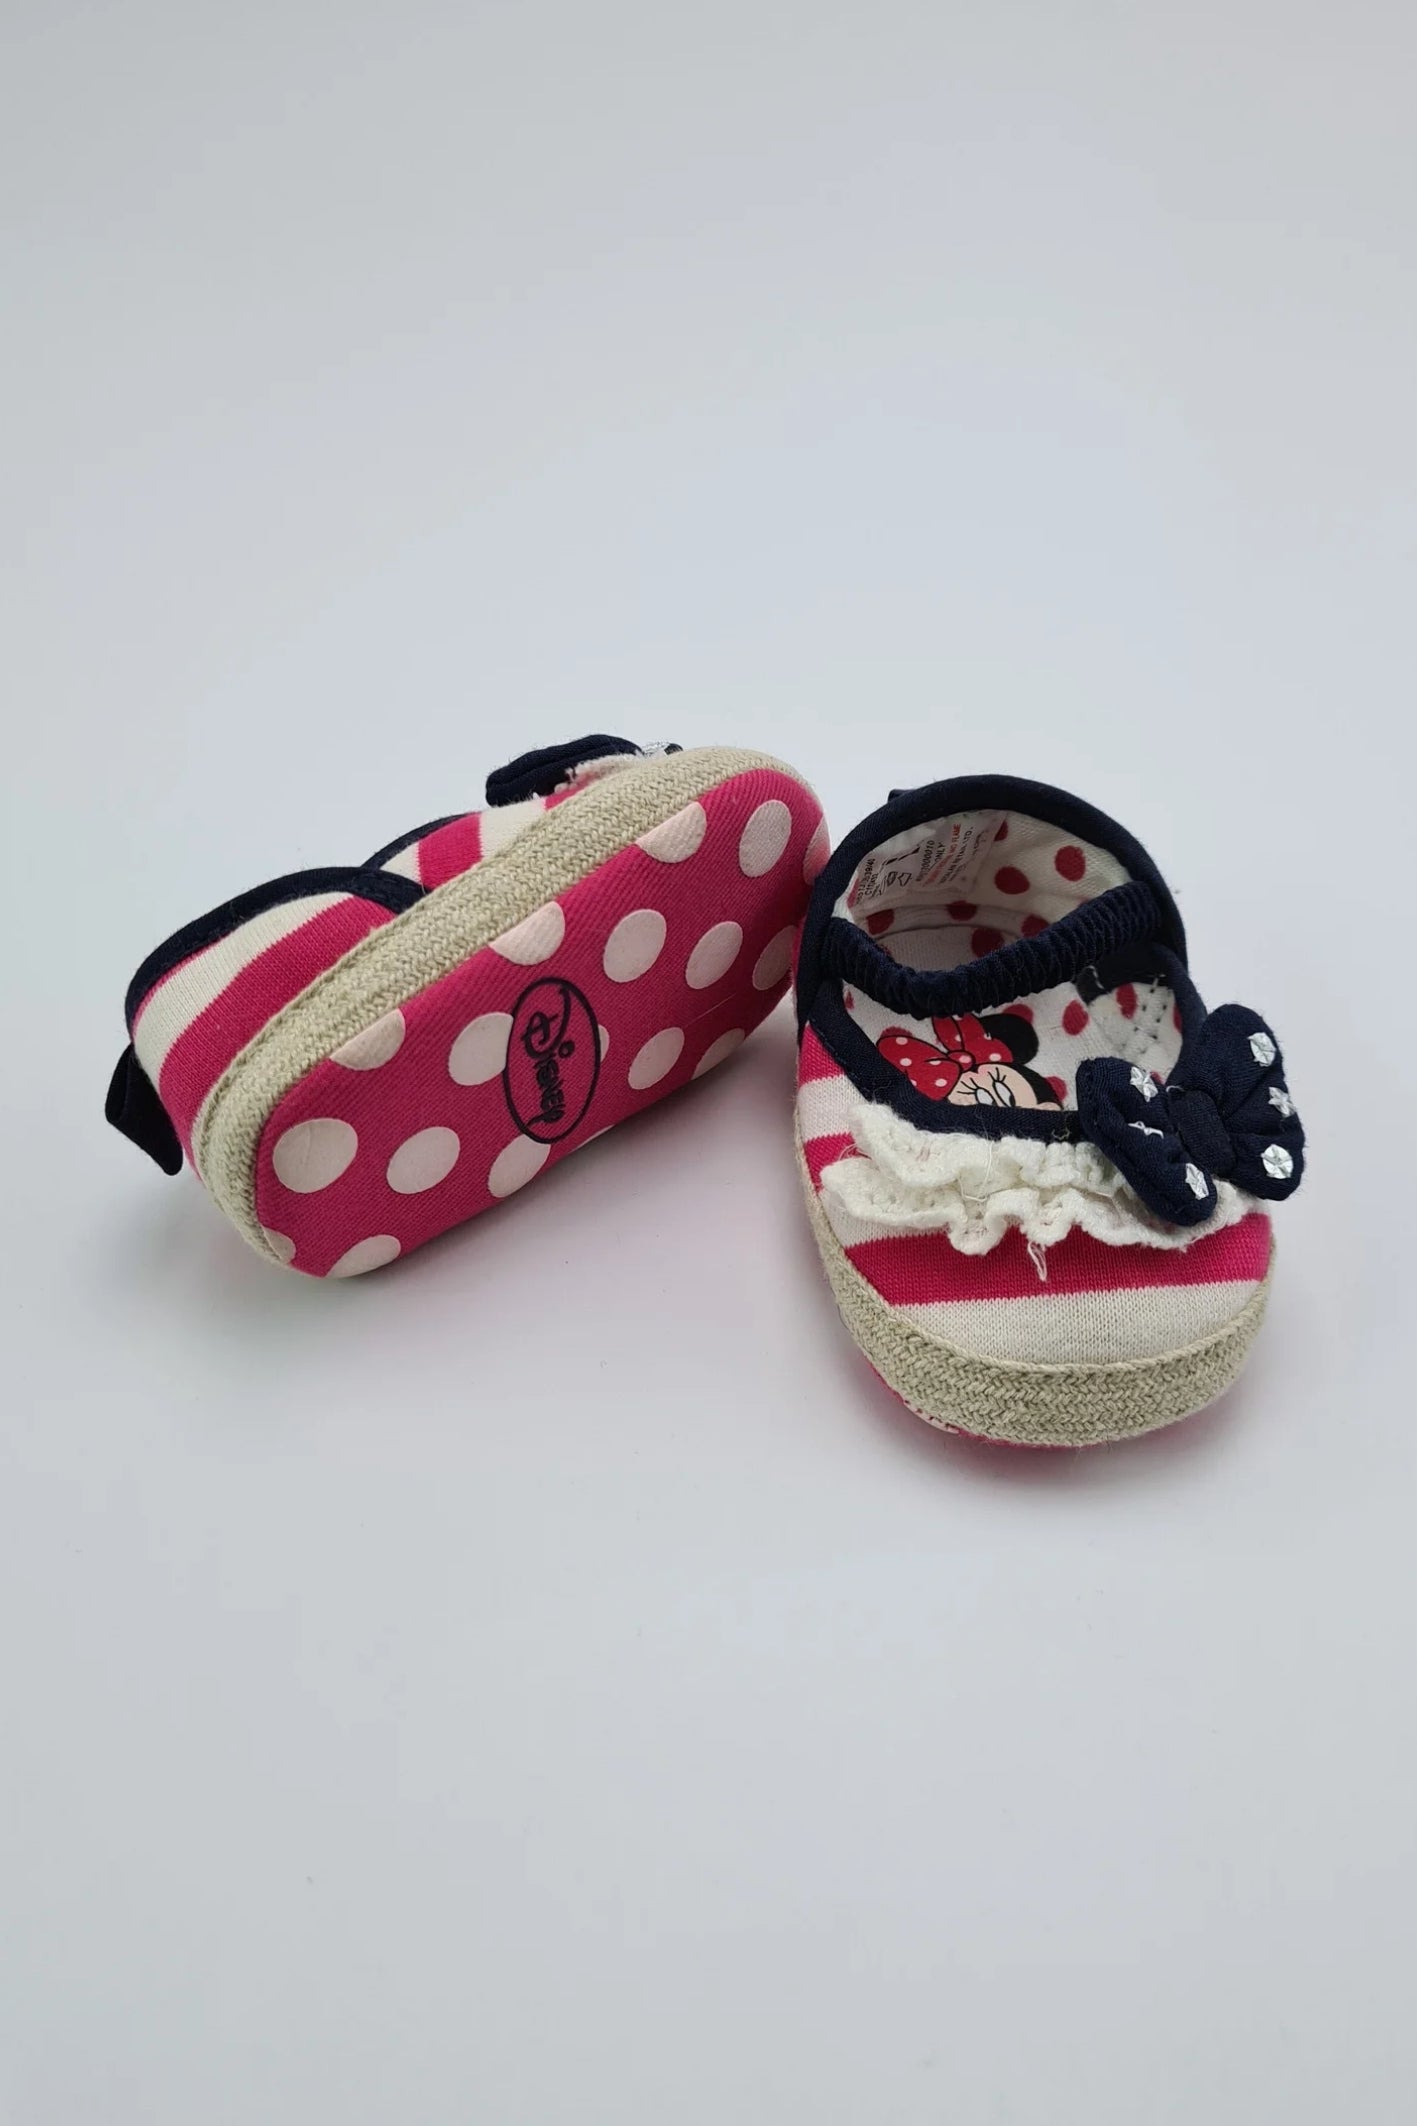 0-3 mois - Chaussures pour bébé personnage Minnie Mouse (Disney Baby)